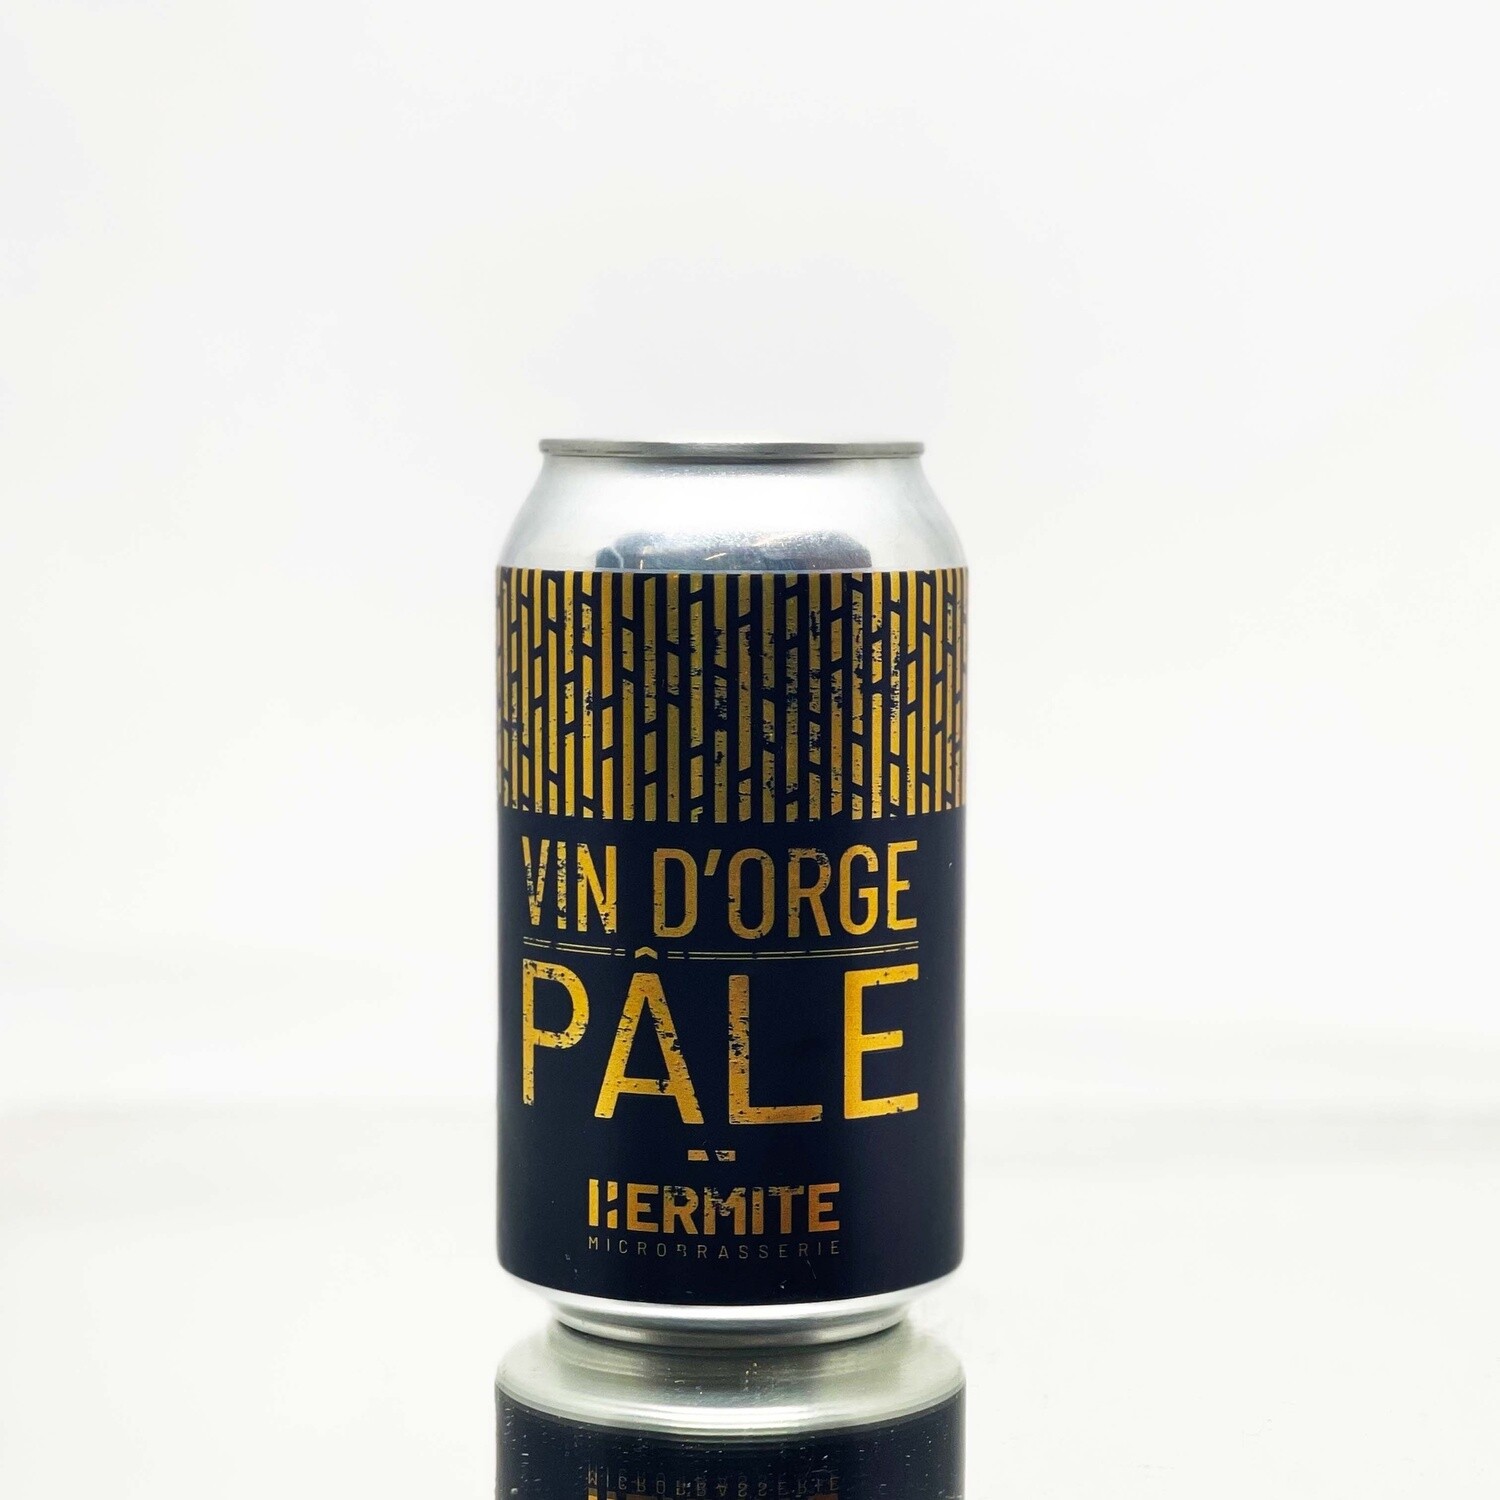 Hermite - Vin d'orge pale